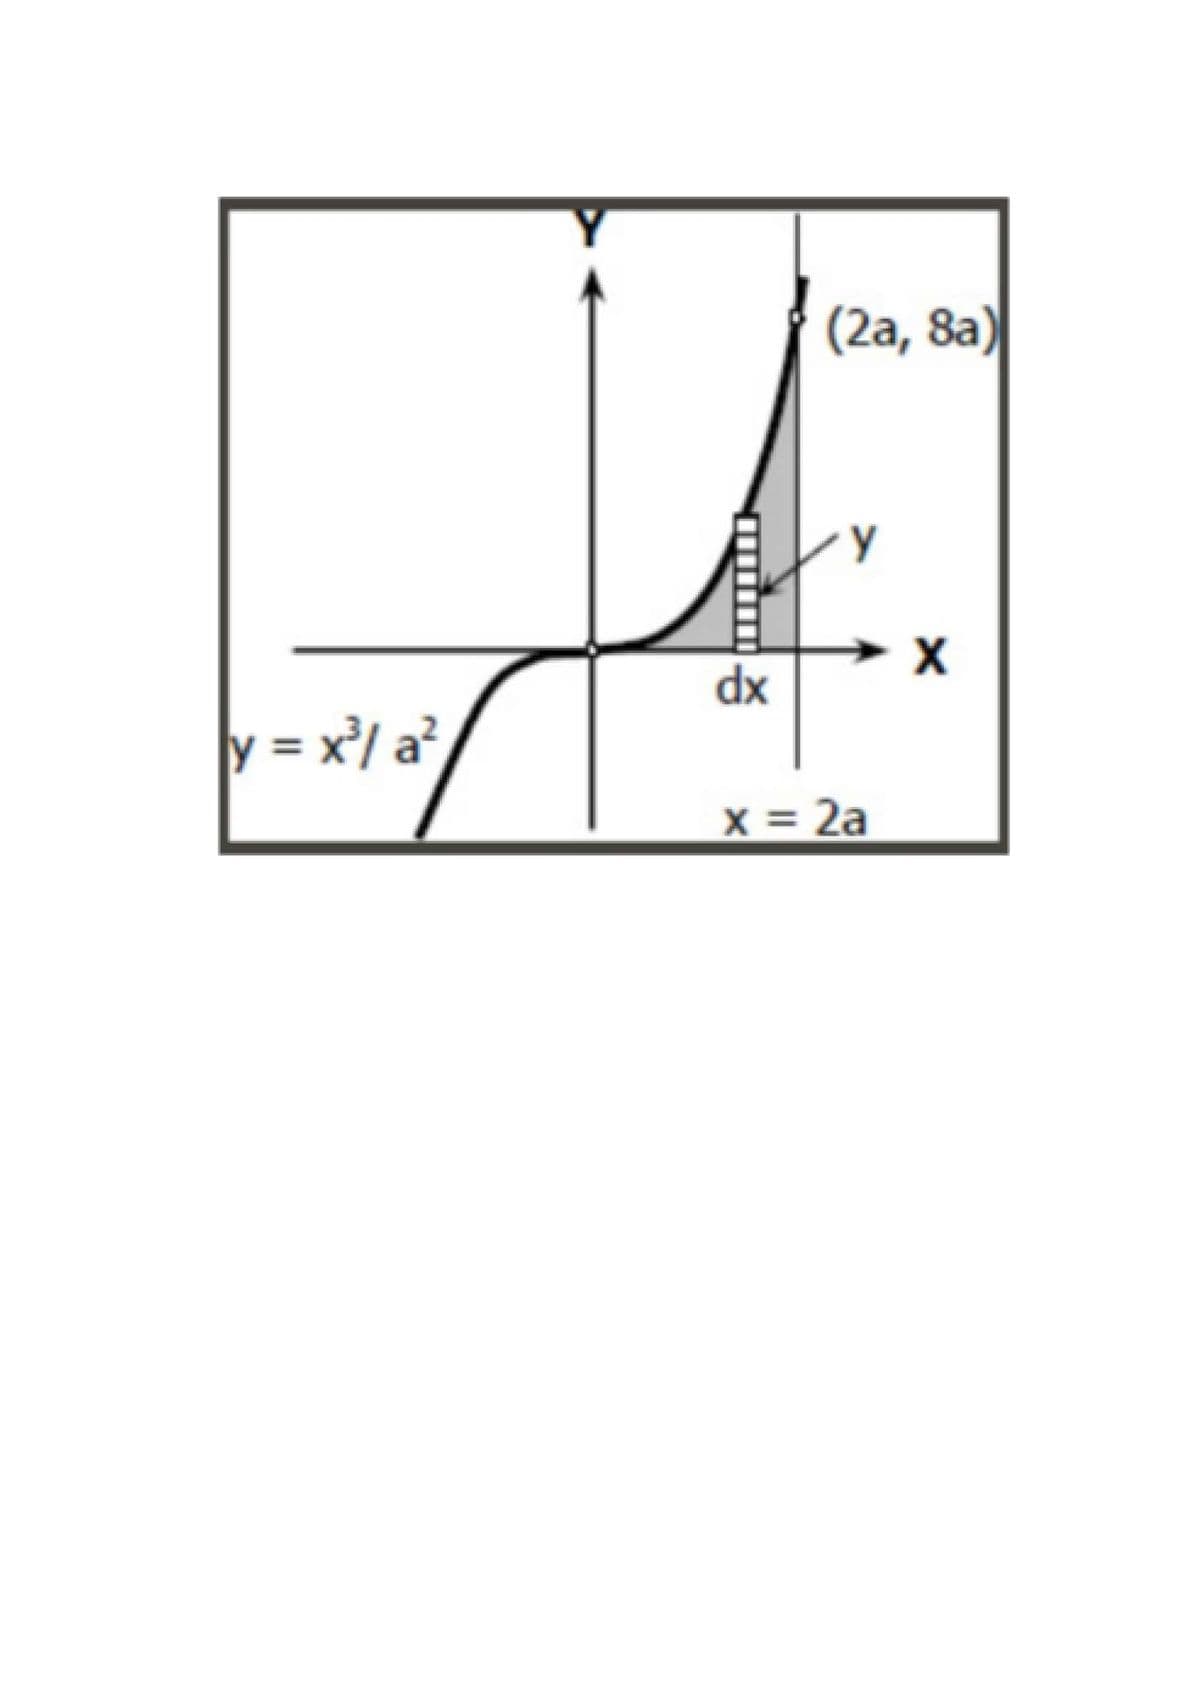 (2a, 8a)
dx
y = x/ a²,
x = 2a
